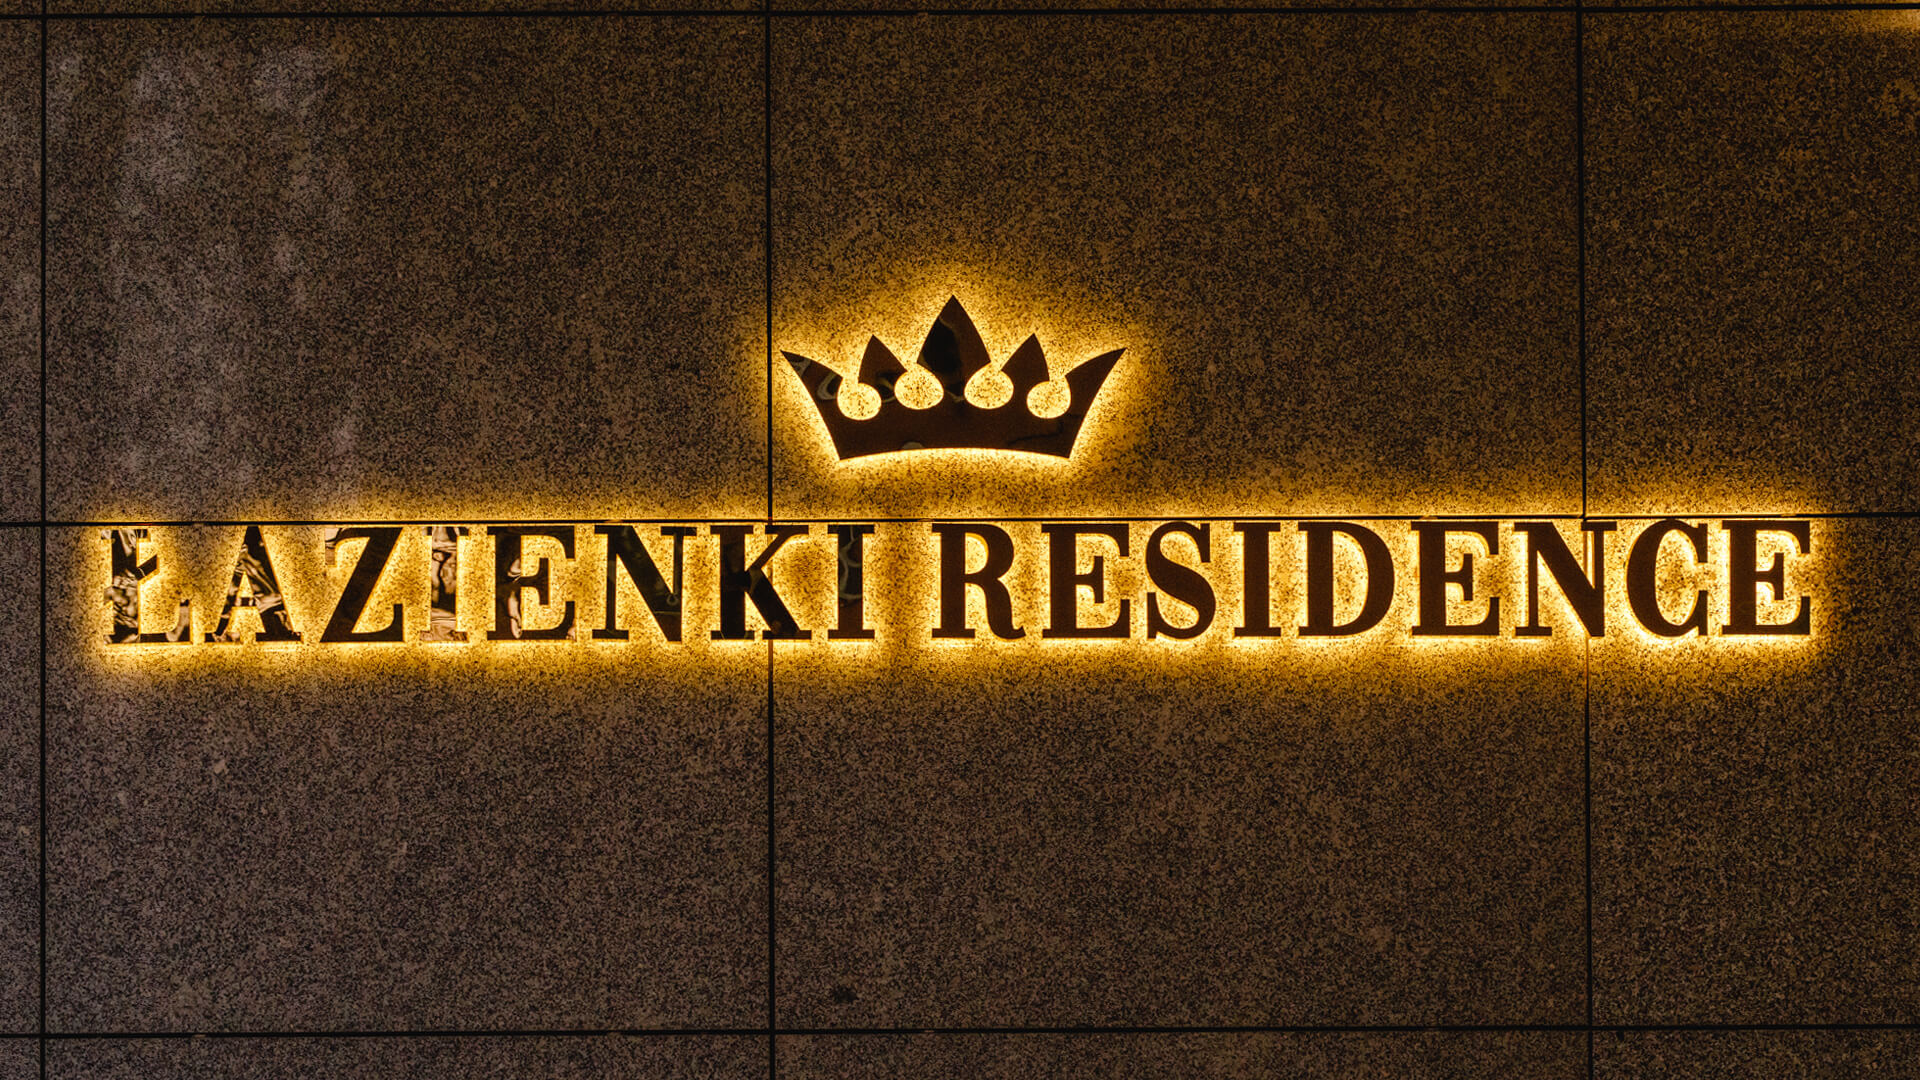 Residencia de Baños - Letra de Residencia de baño de acero inoxidable en dorado, LED retroiluminado en la pared, con una corona en el logotipo.